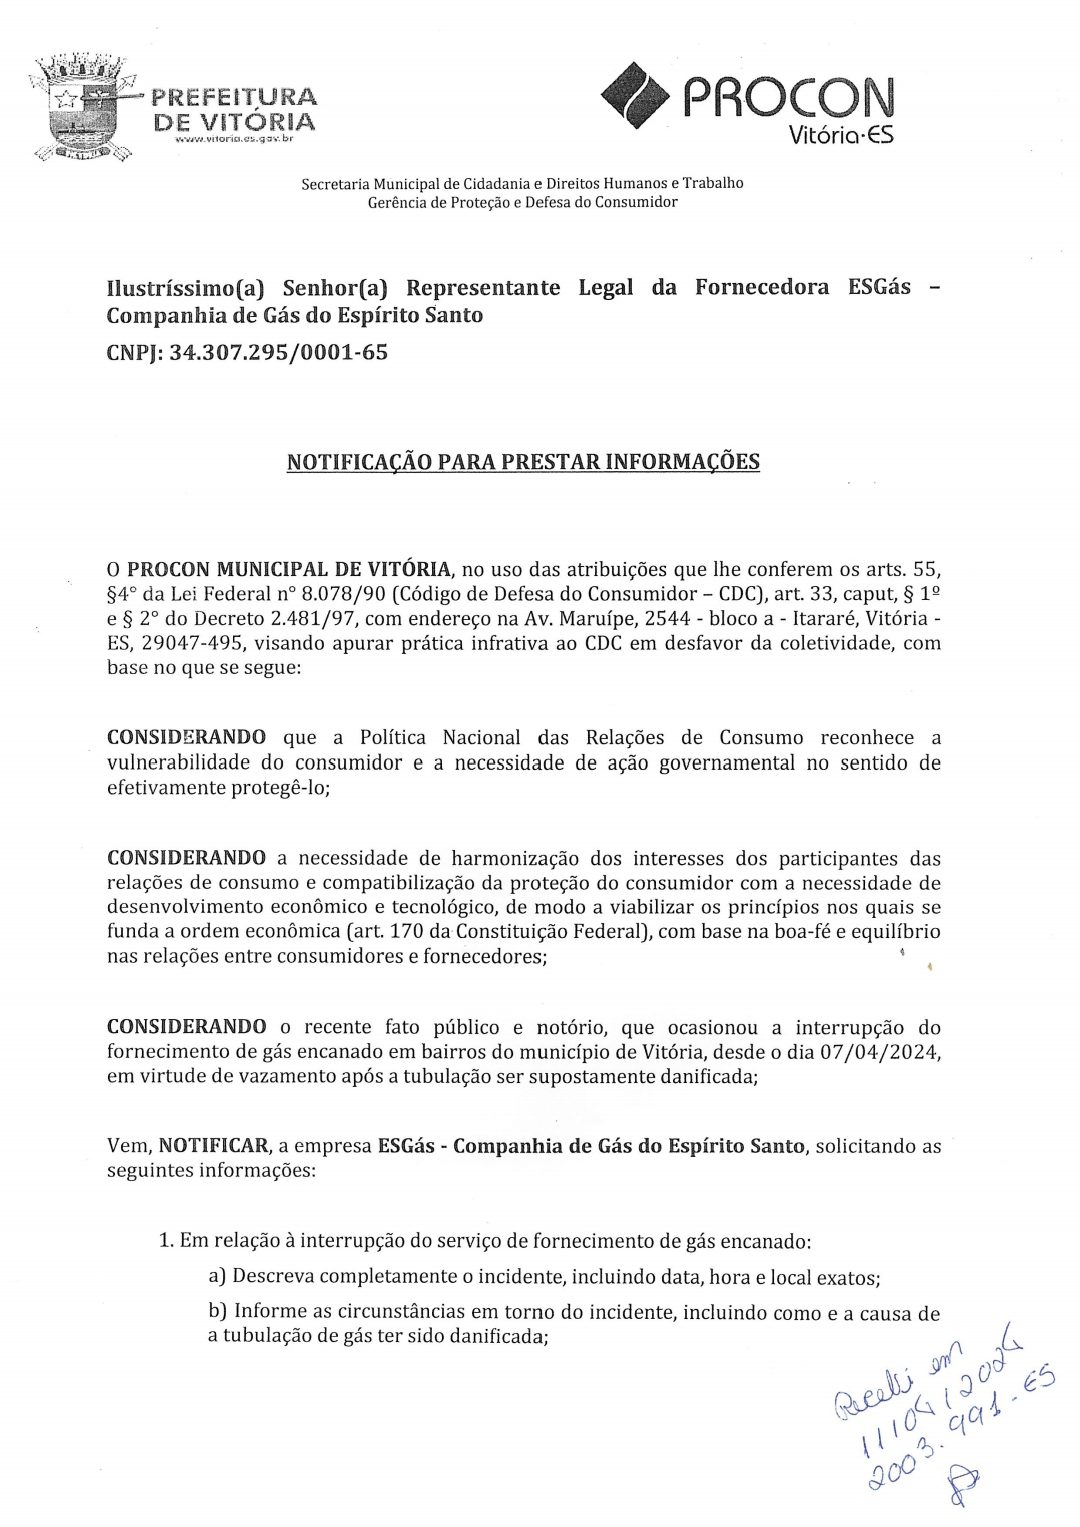 Procon de Vitória notifica empresa após interrupção do serviço de gás